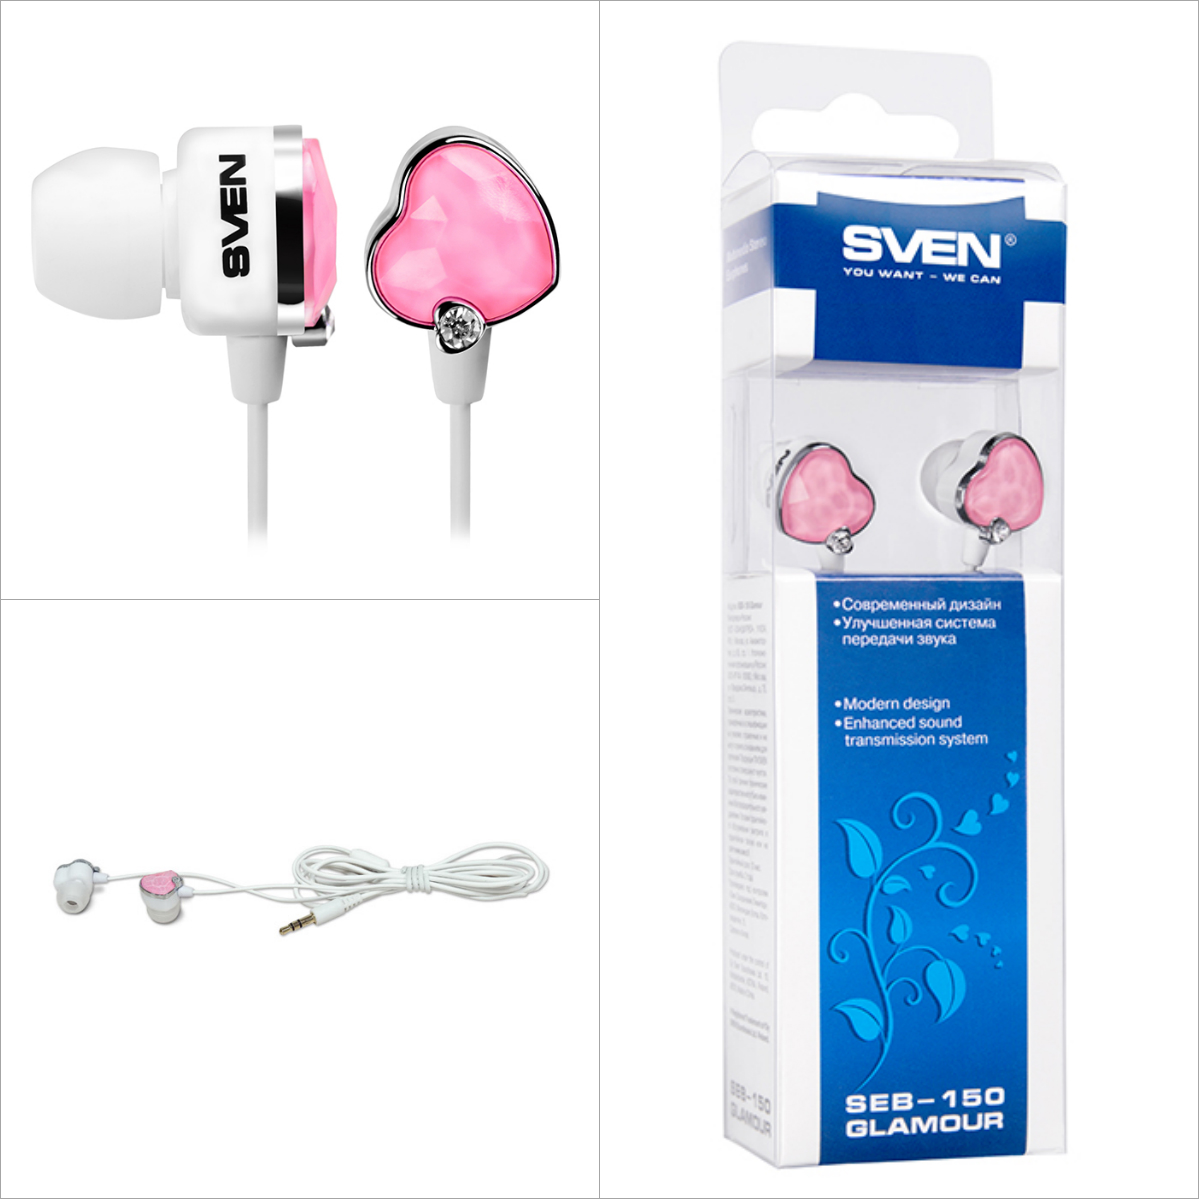 Наушники Sven SEB-150 (GD-1500) Glamour White/Pink, Mini jack (3.5 мм), вакуумные, кабель 1.2 м